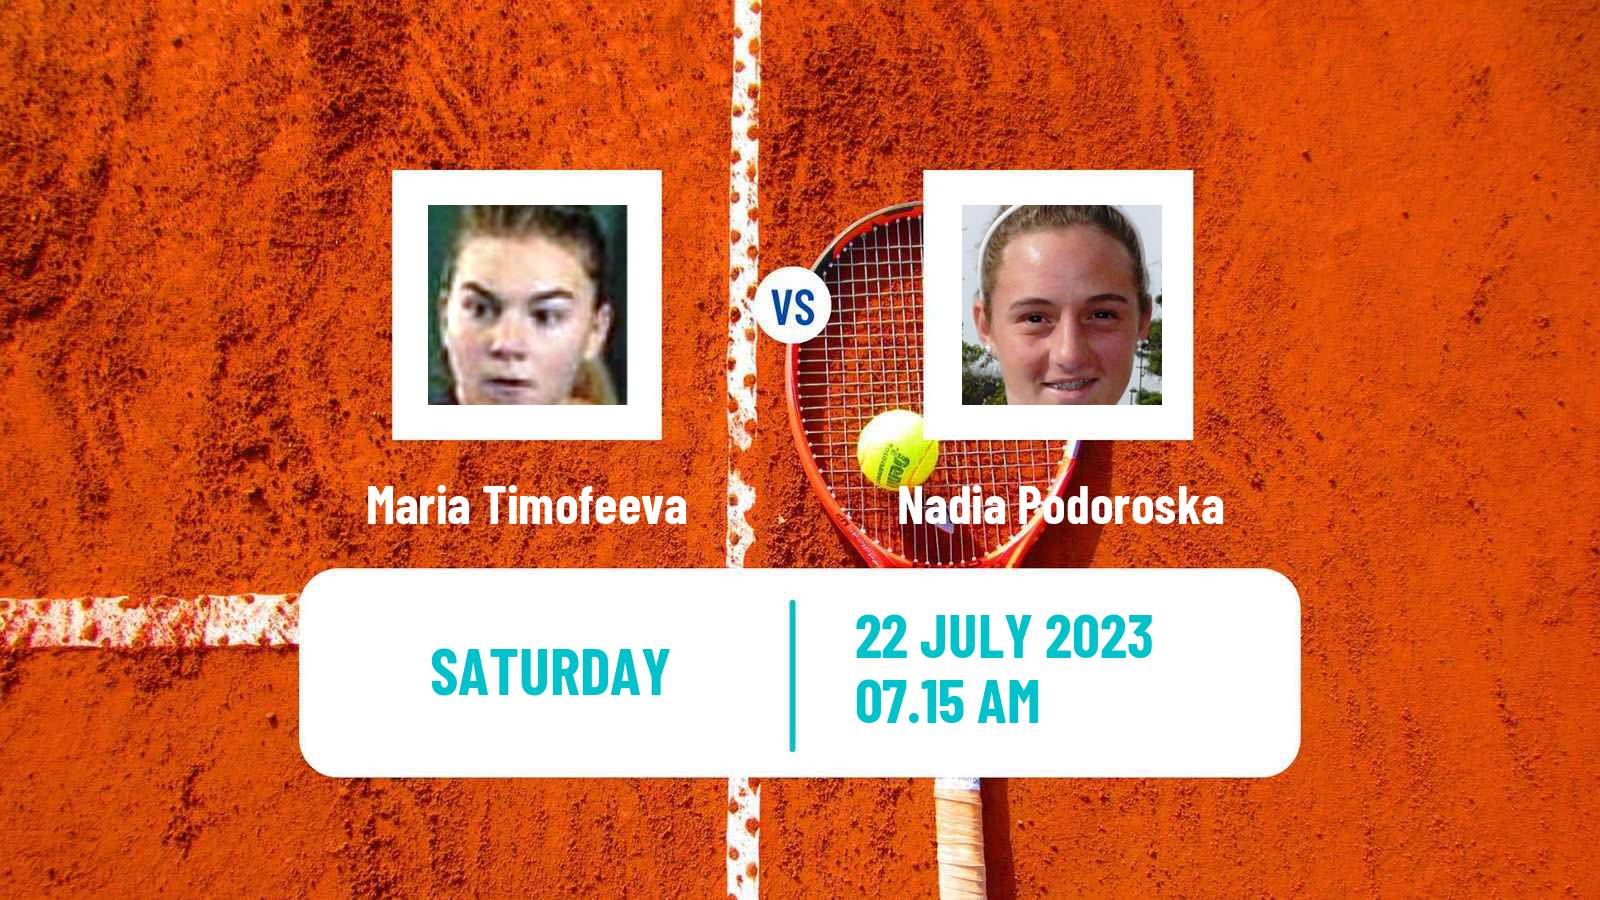 Tennis WTA Budapest Maria Timofeeva - Nadia Podoroska